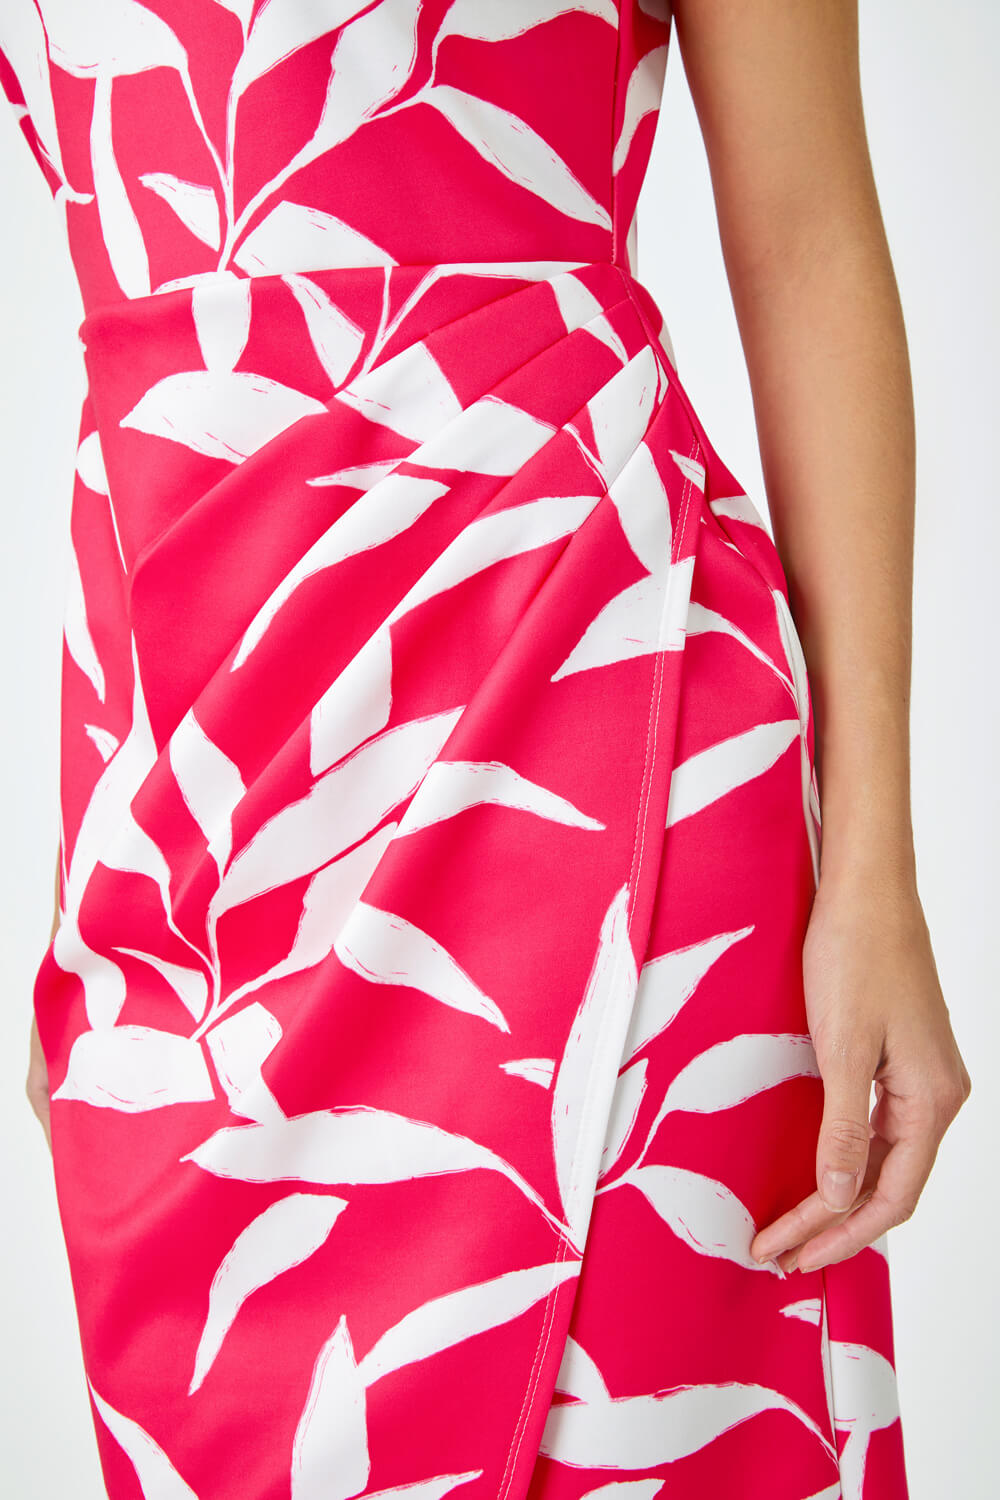 CERISE Leaf Print Ruched Shift Dress, Image 5 of 5